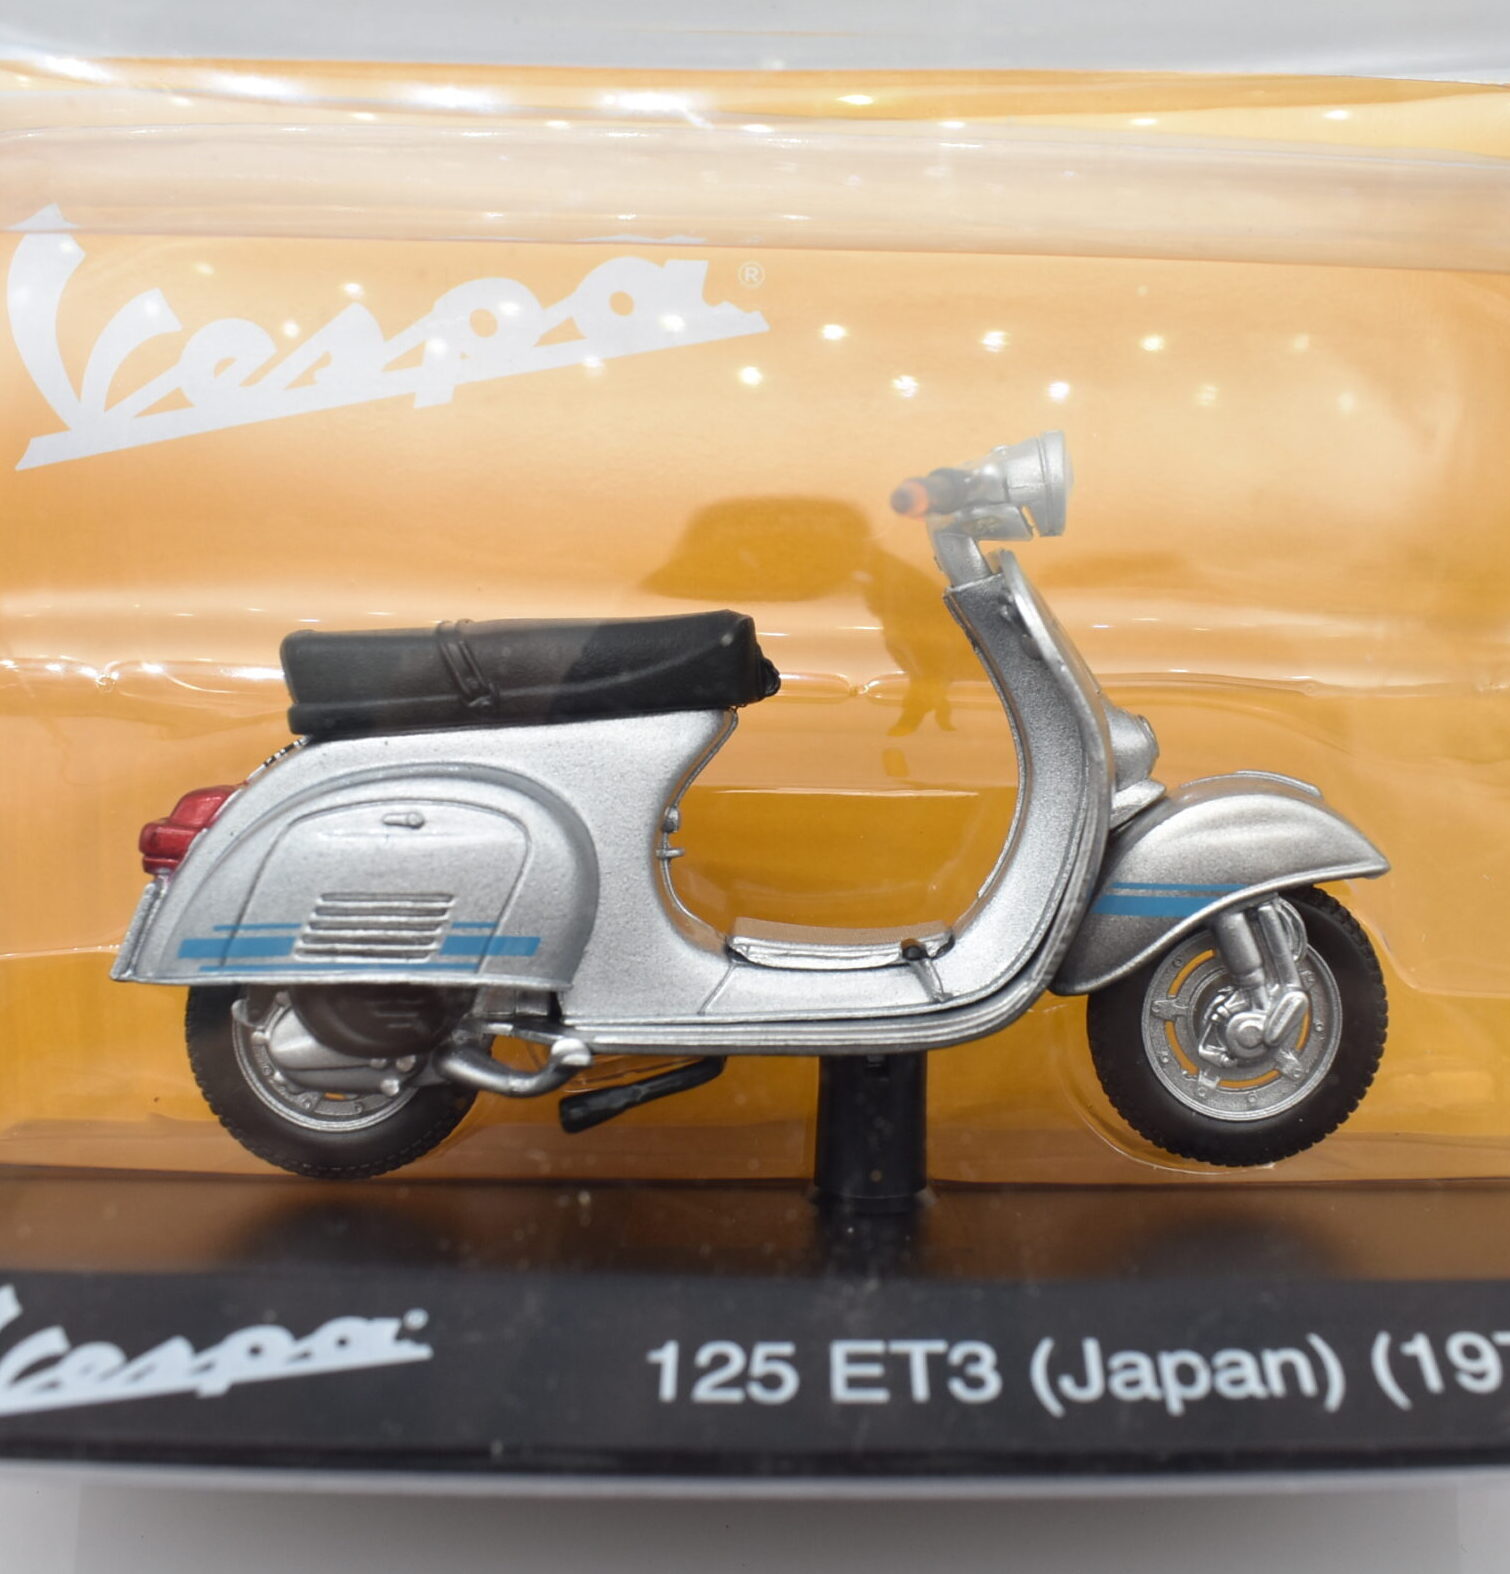 Modellini vespa 125 ET3 JAPAN scala 1:18 modellismo da collezione motor bike